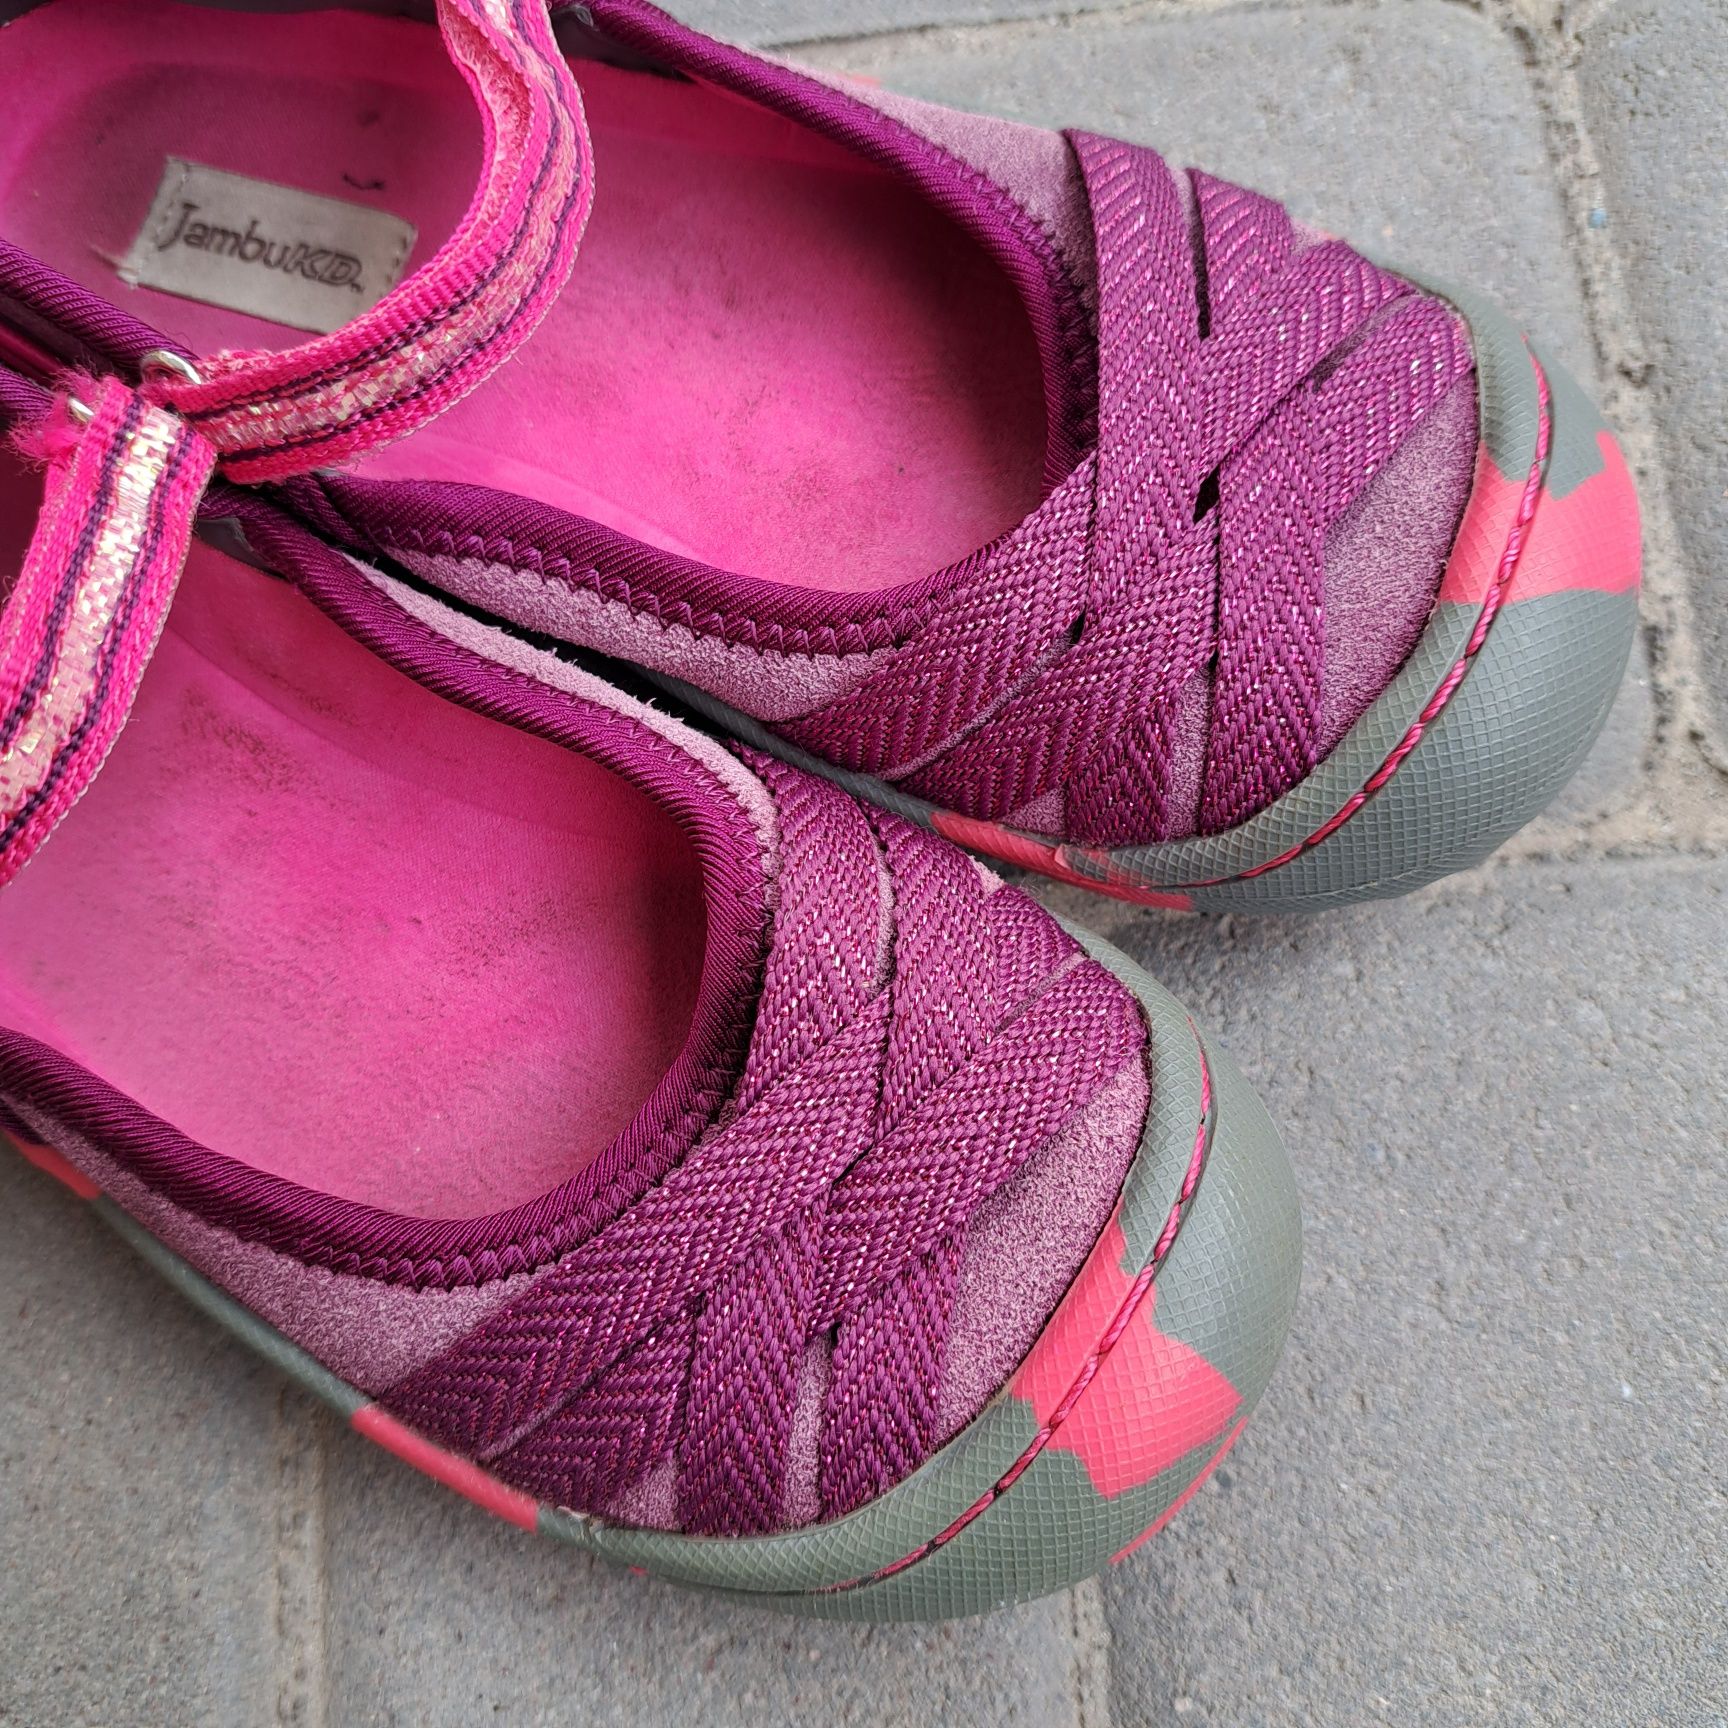 Туфлі, мокасини на дівчинку з натуральної замші, 19,5см.Замшевые туфли